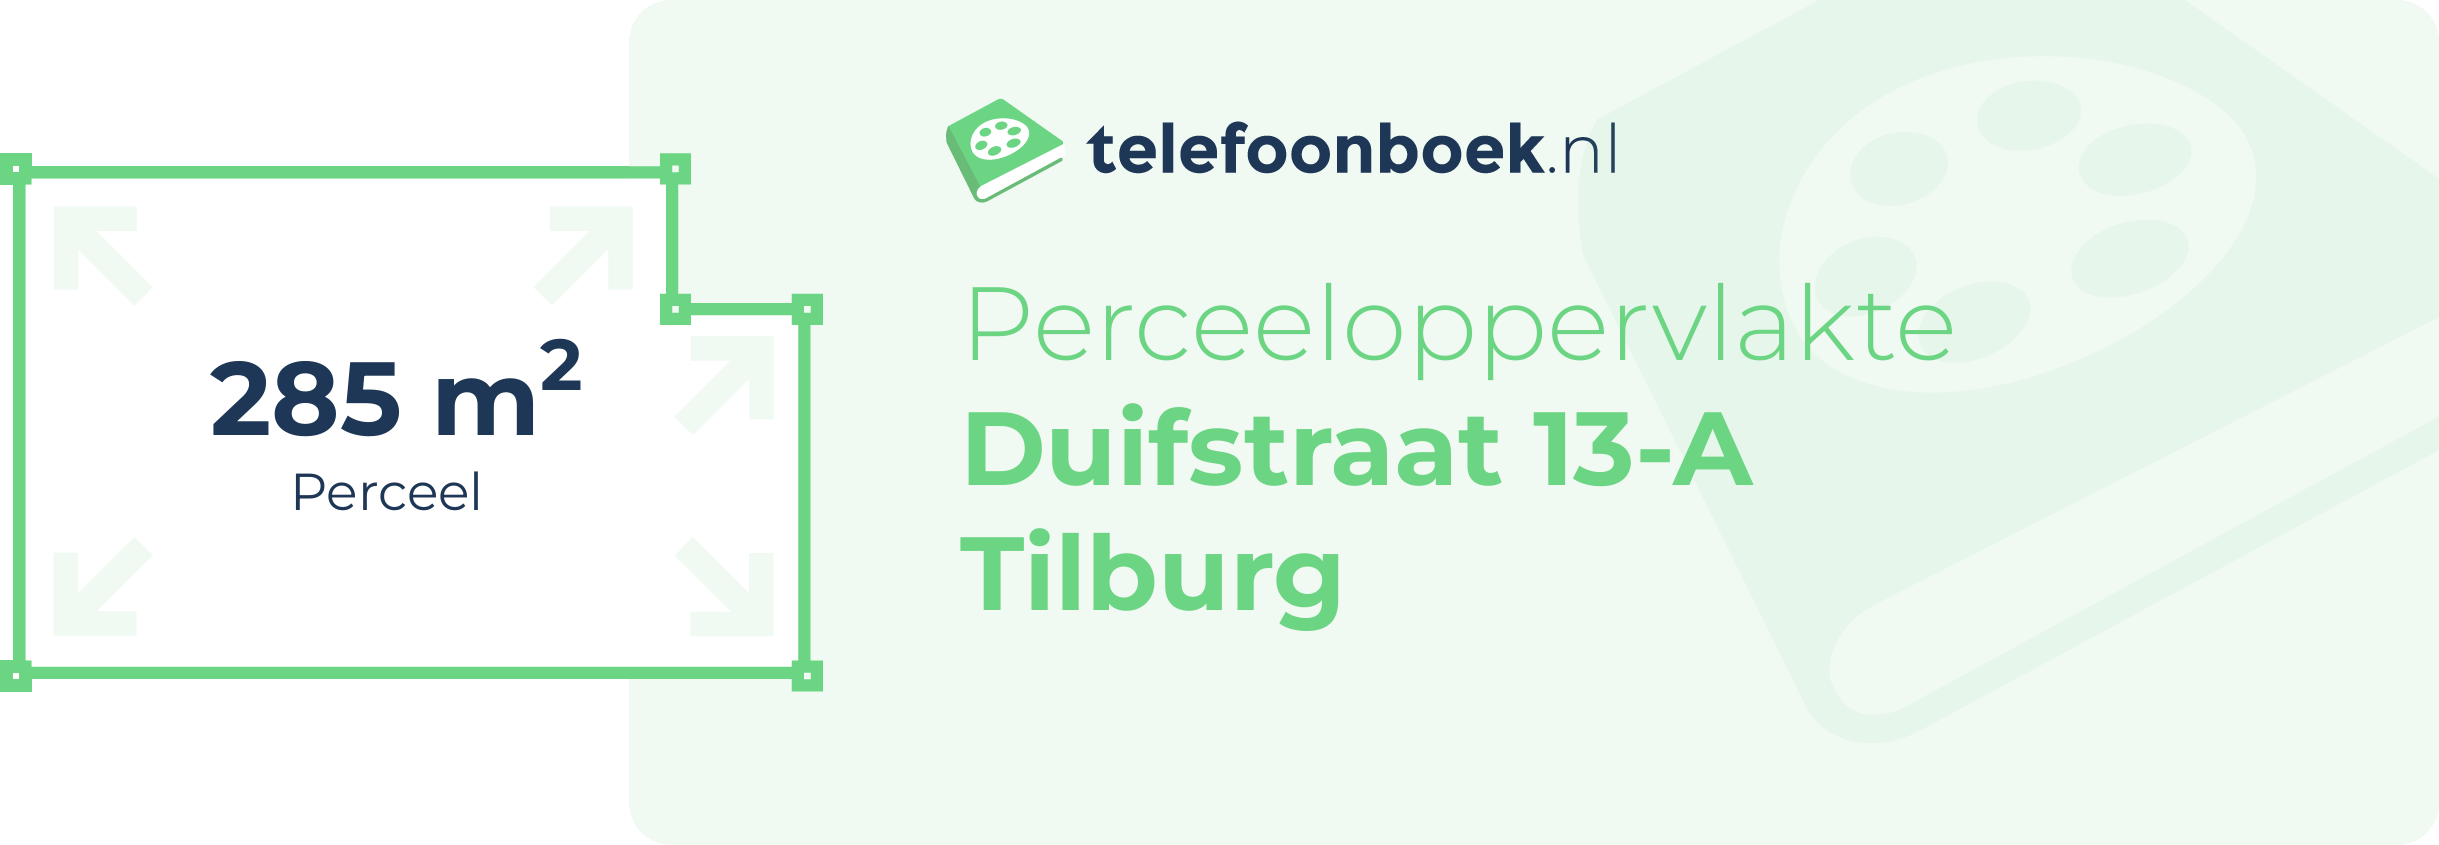 Perceeloppervlakte Duifstraat 13-A Tilburg